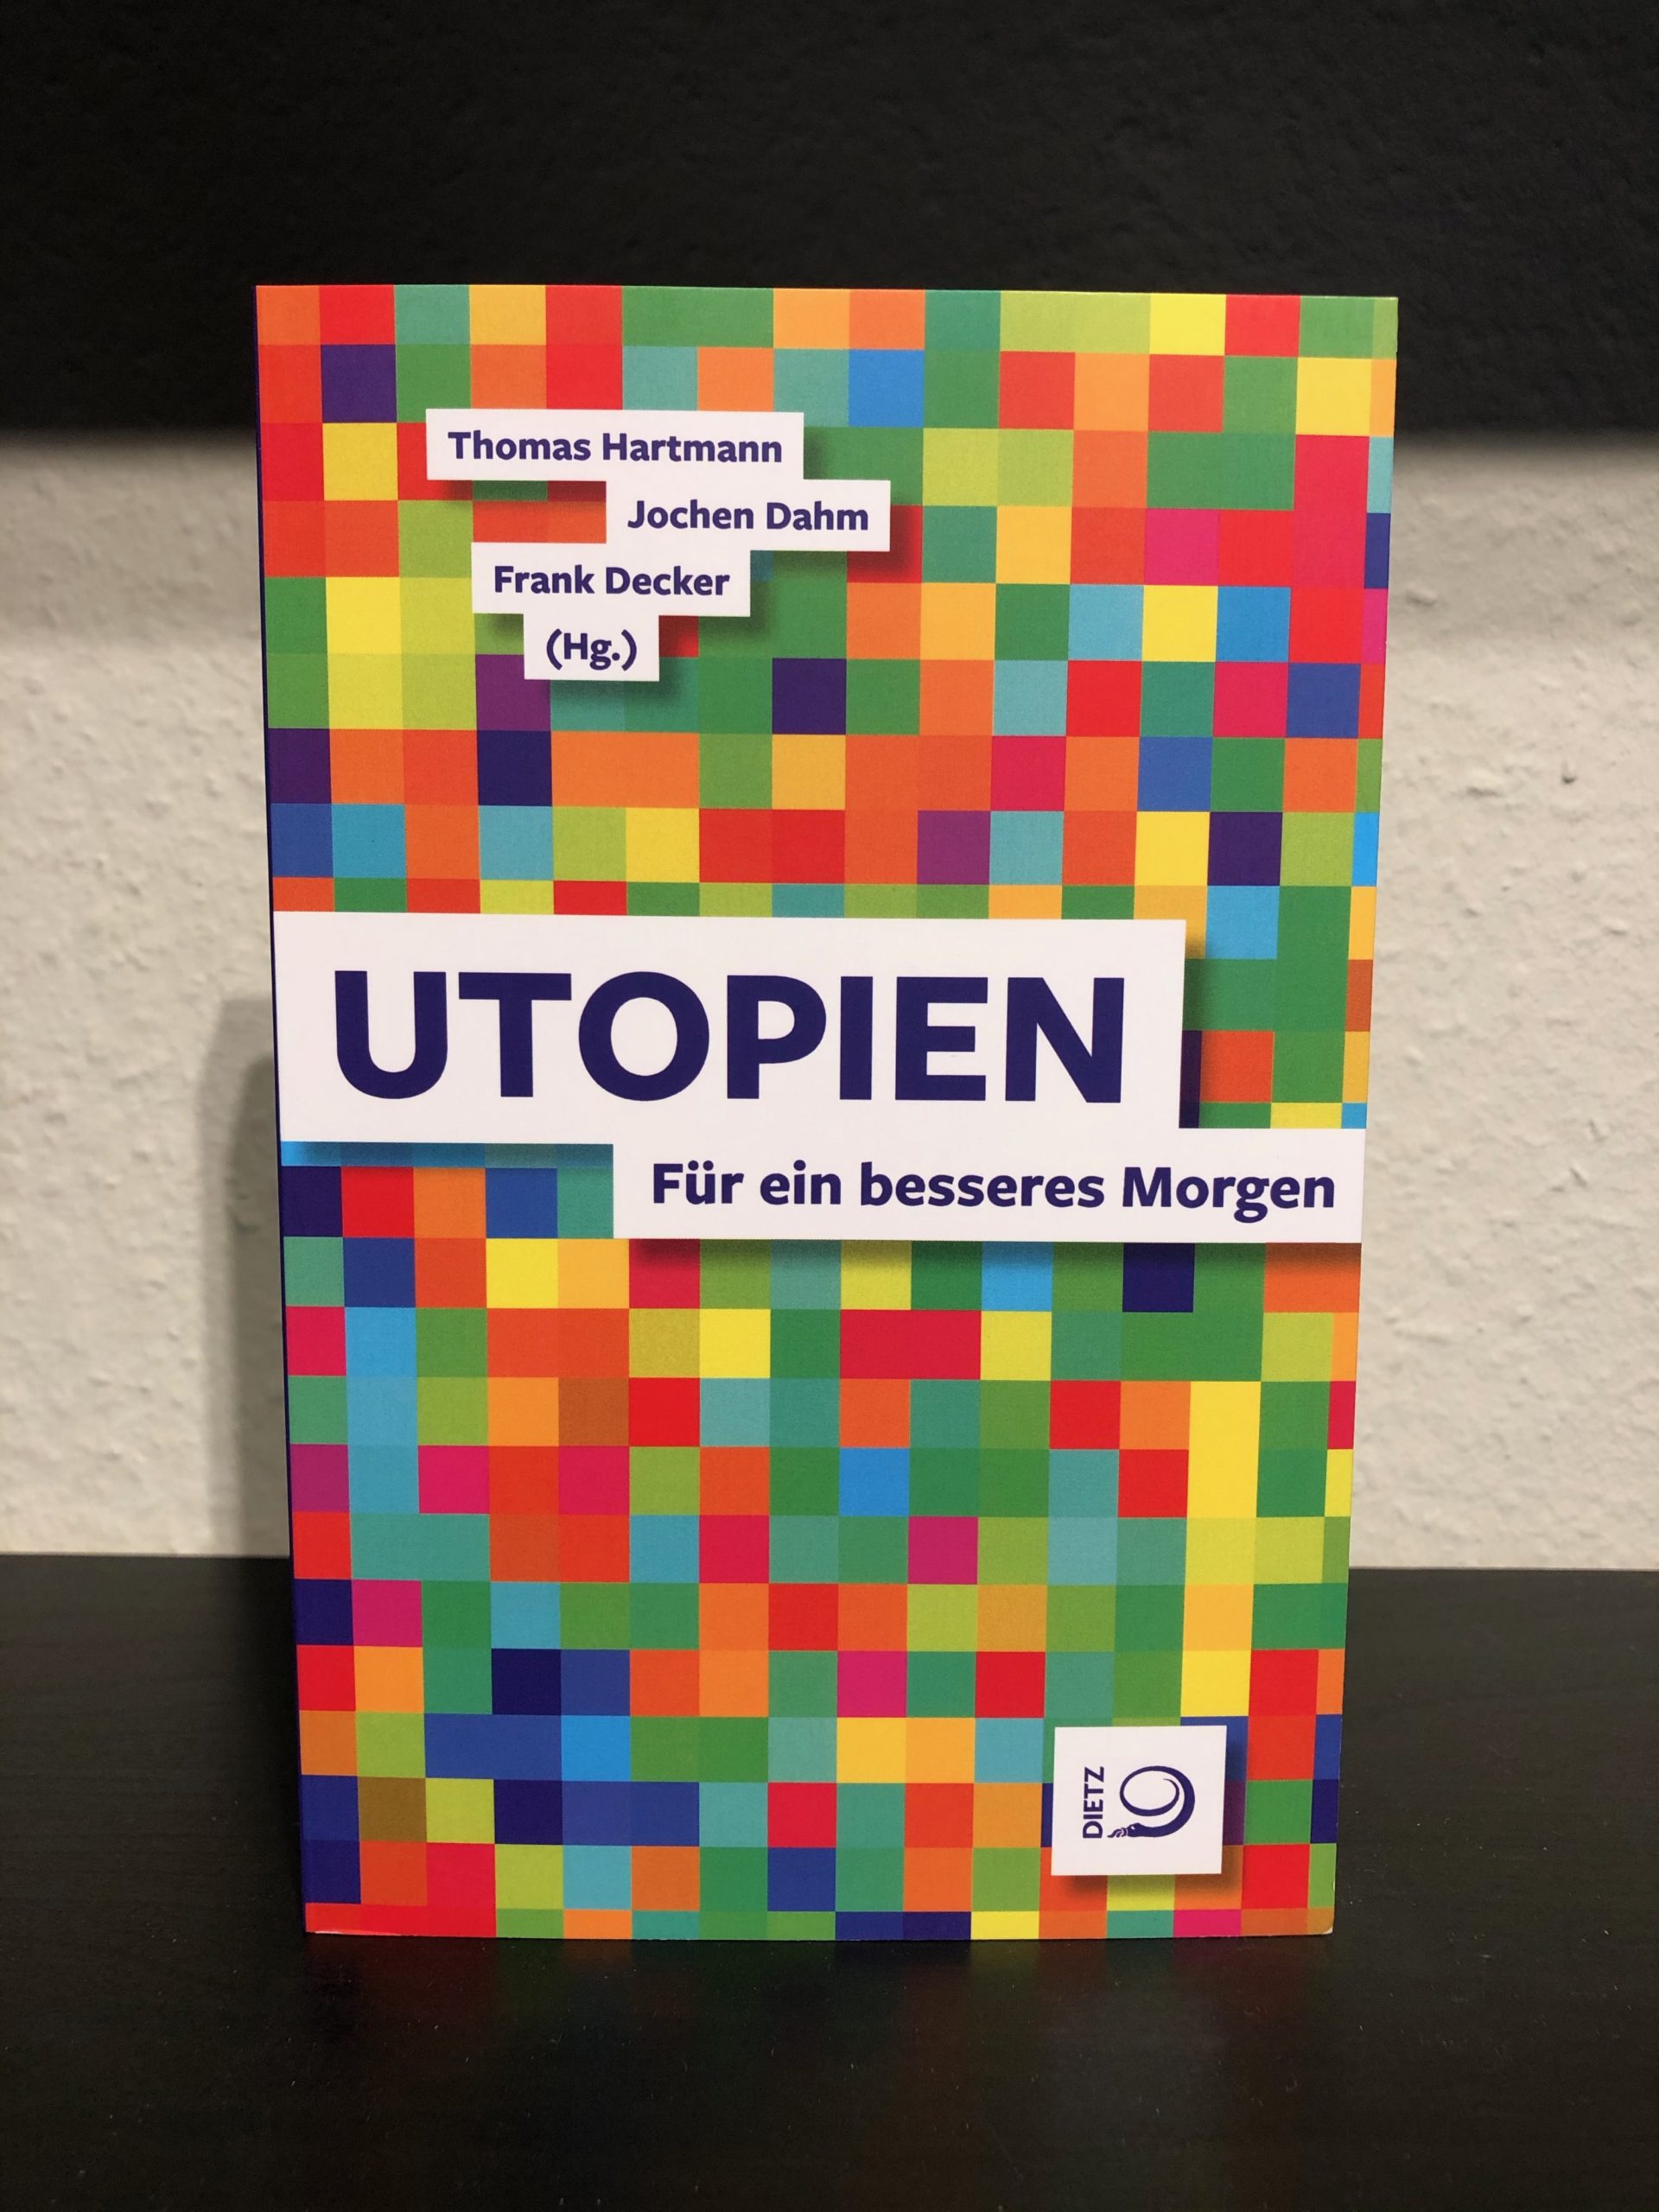 Utopien - Für ein besseres Morgen - Thomas Hartmann, Jochen Dahm, Frank Decker-image